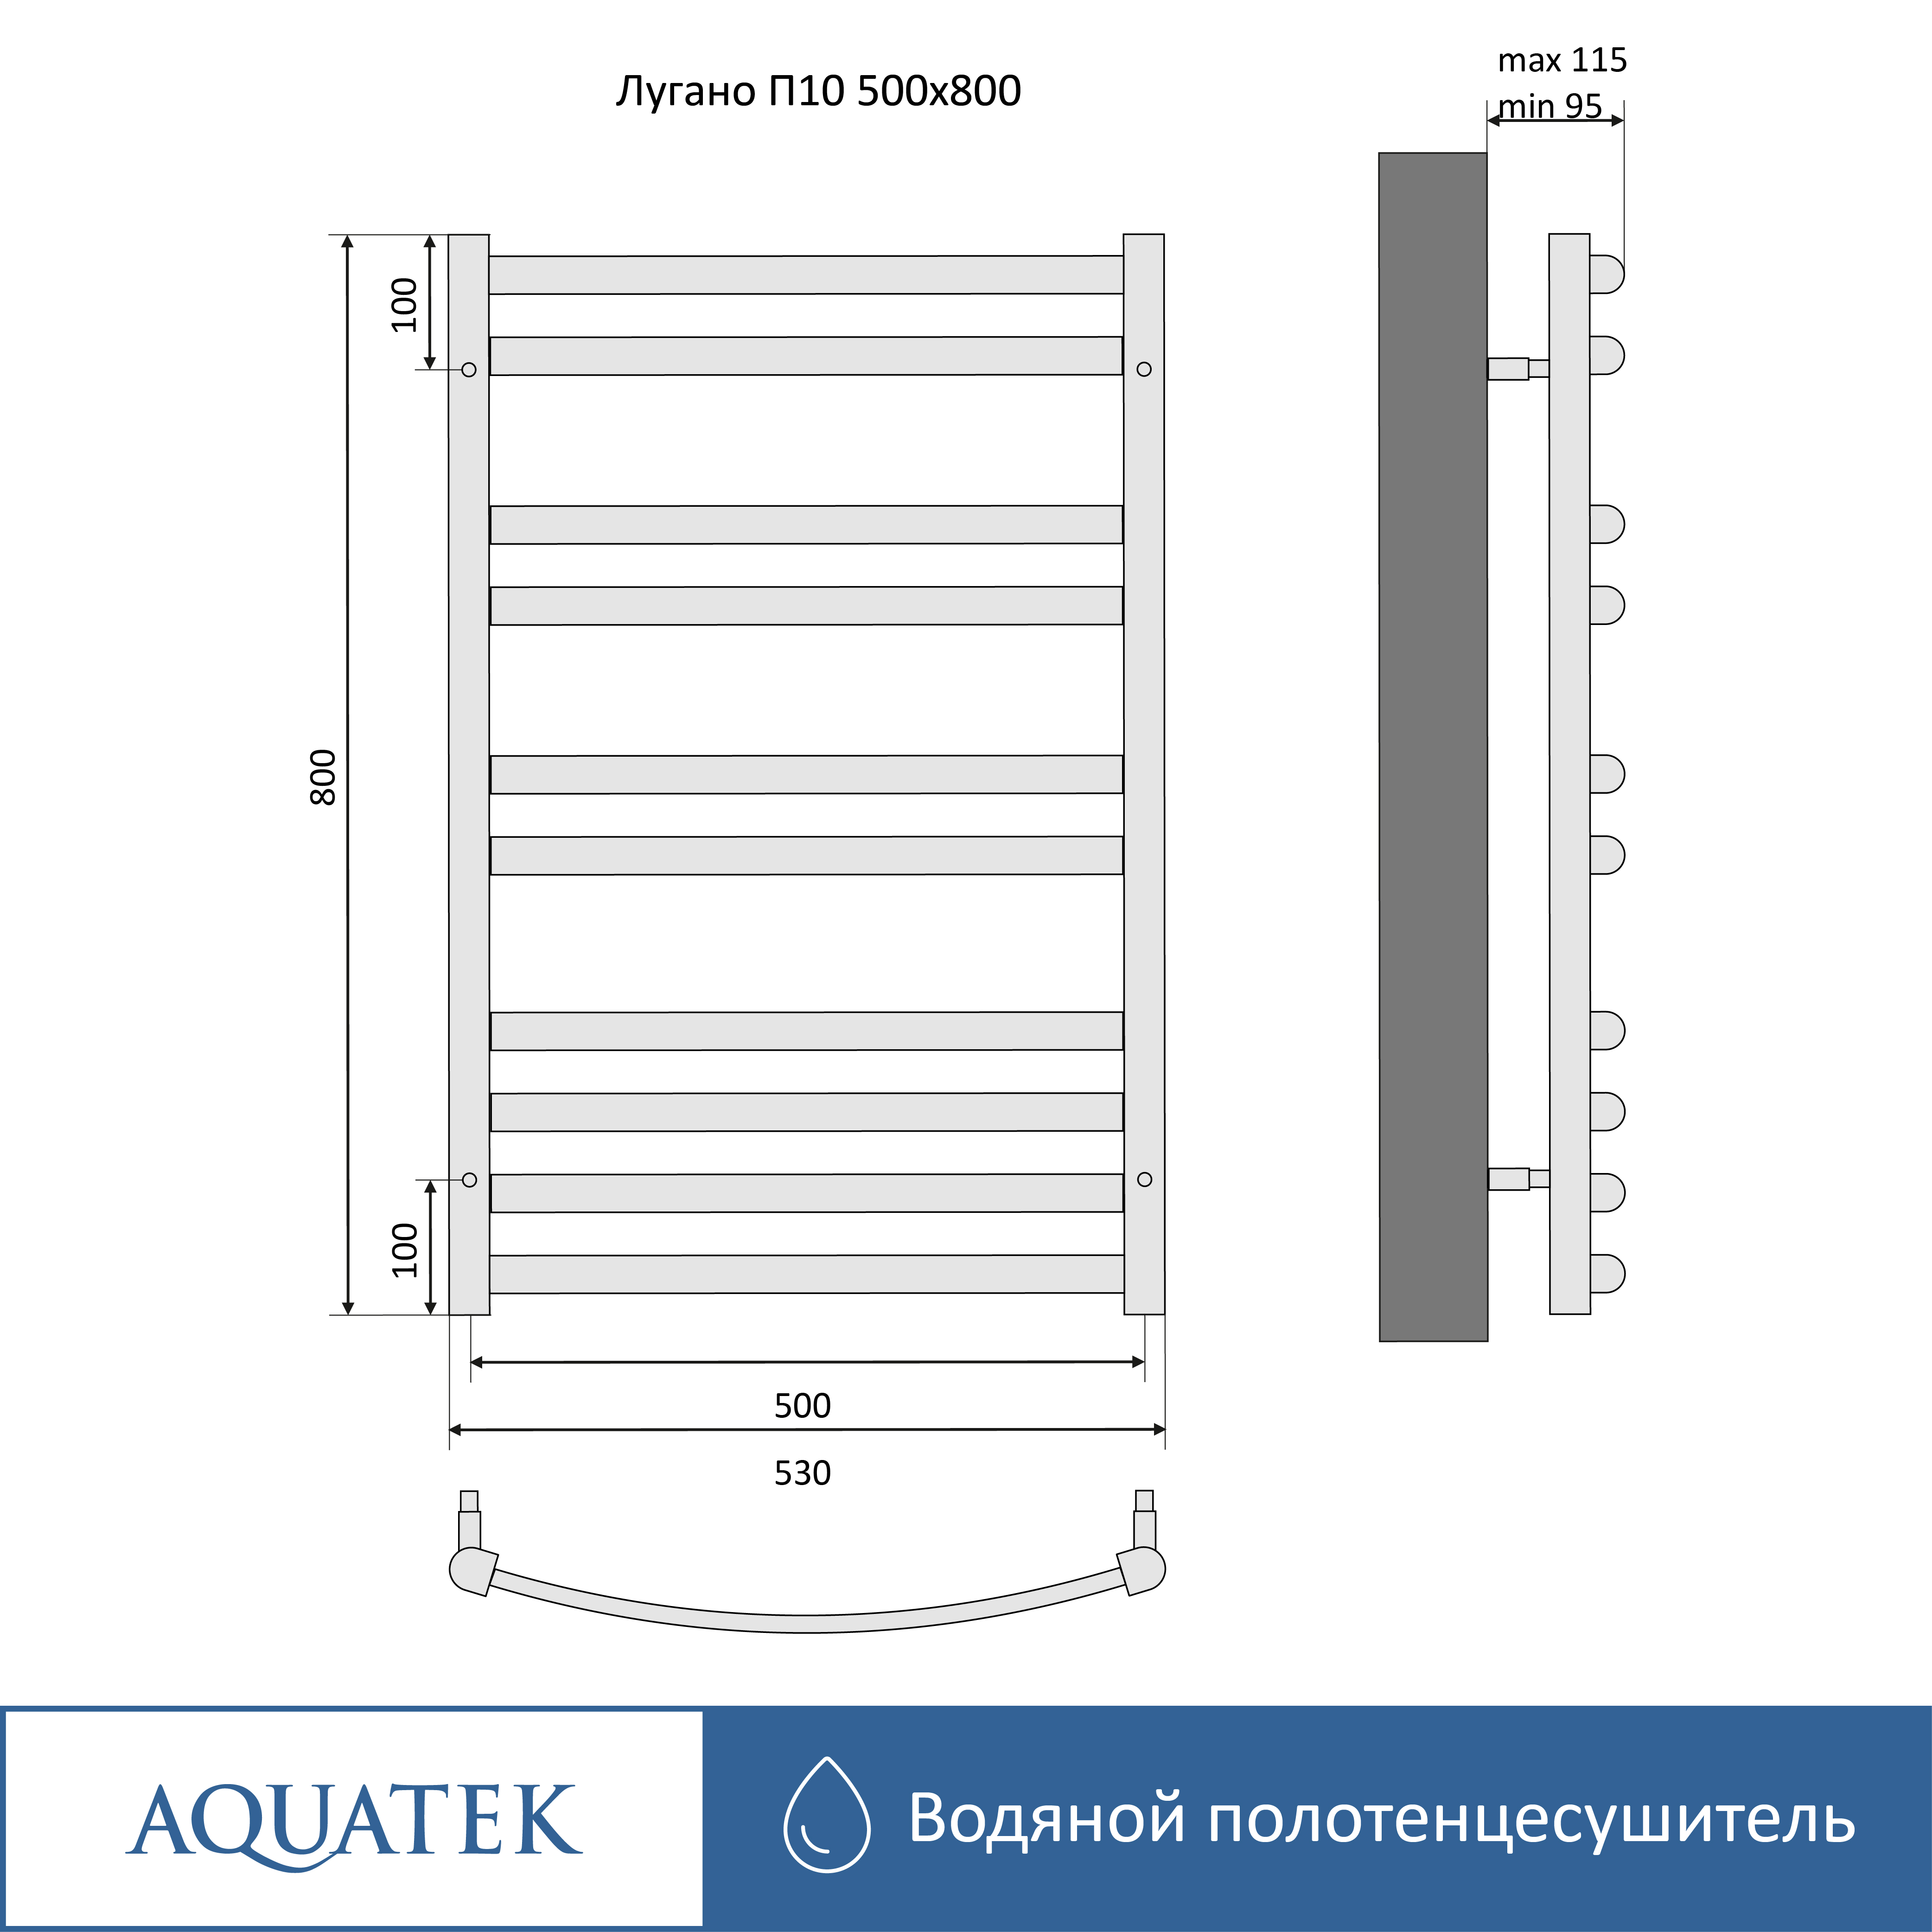 Полотенцесушитель водяной Aquatek Лугано П10 500х800 AQ DOC1080CH - 14